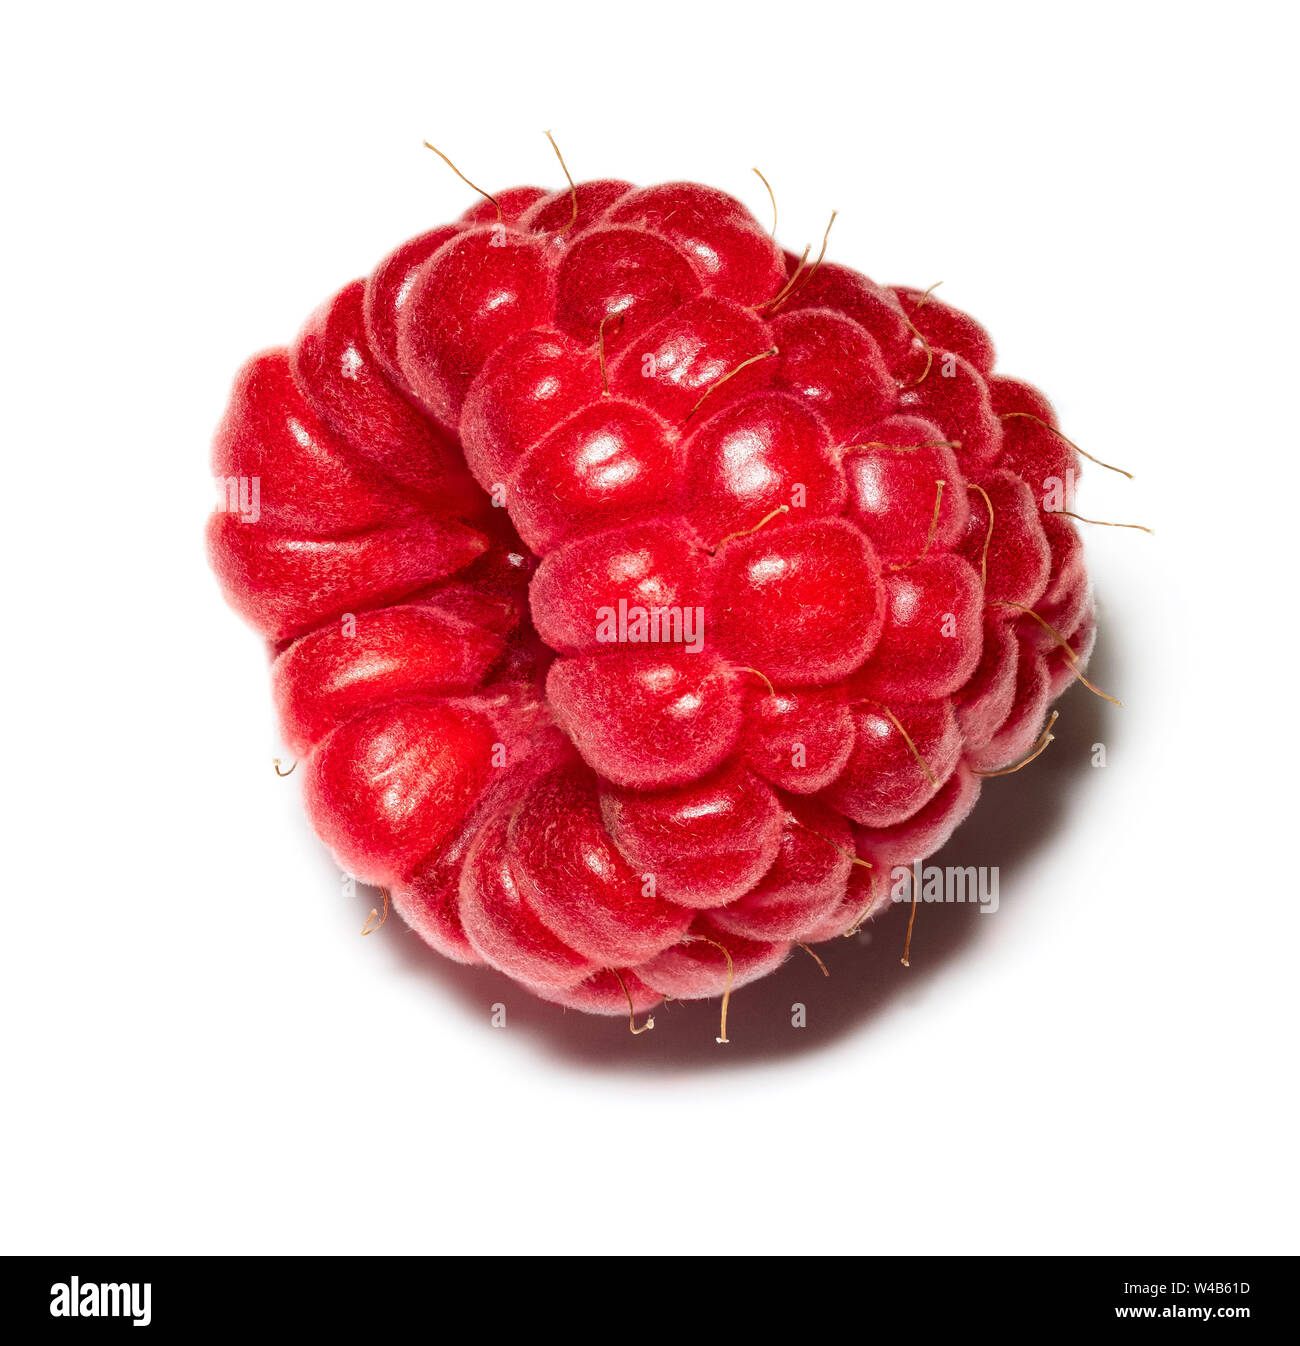 Imagen macro de un recién elegido rasberry - focus fotos apiladas Foto de stock